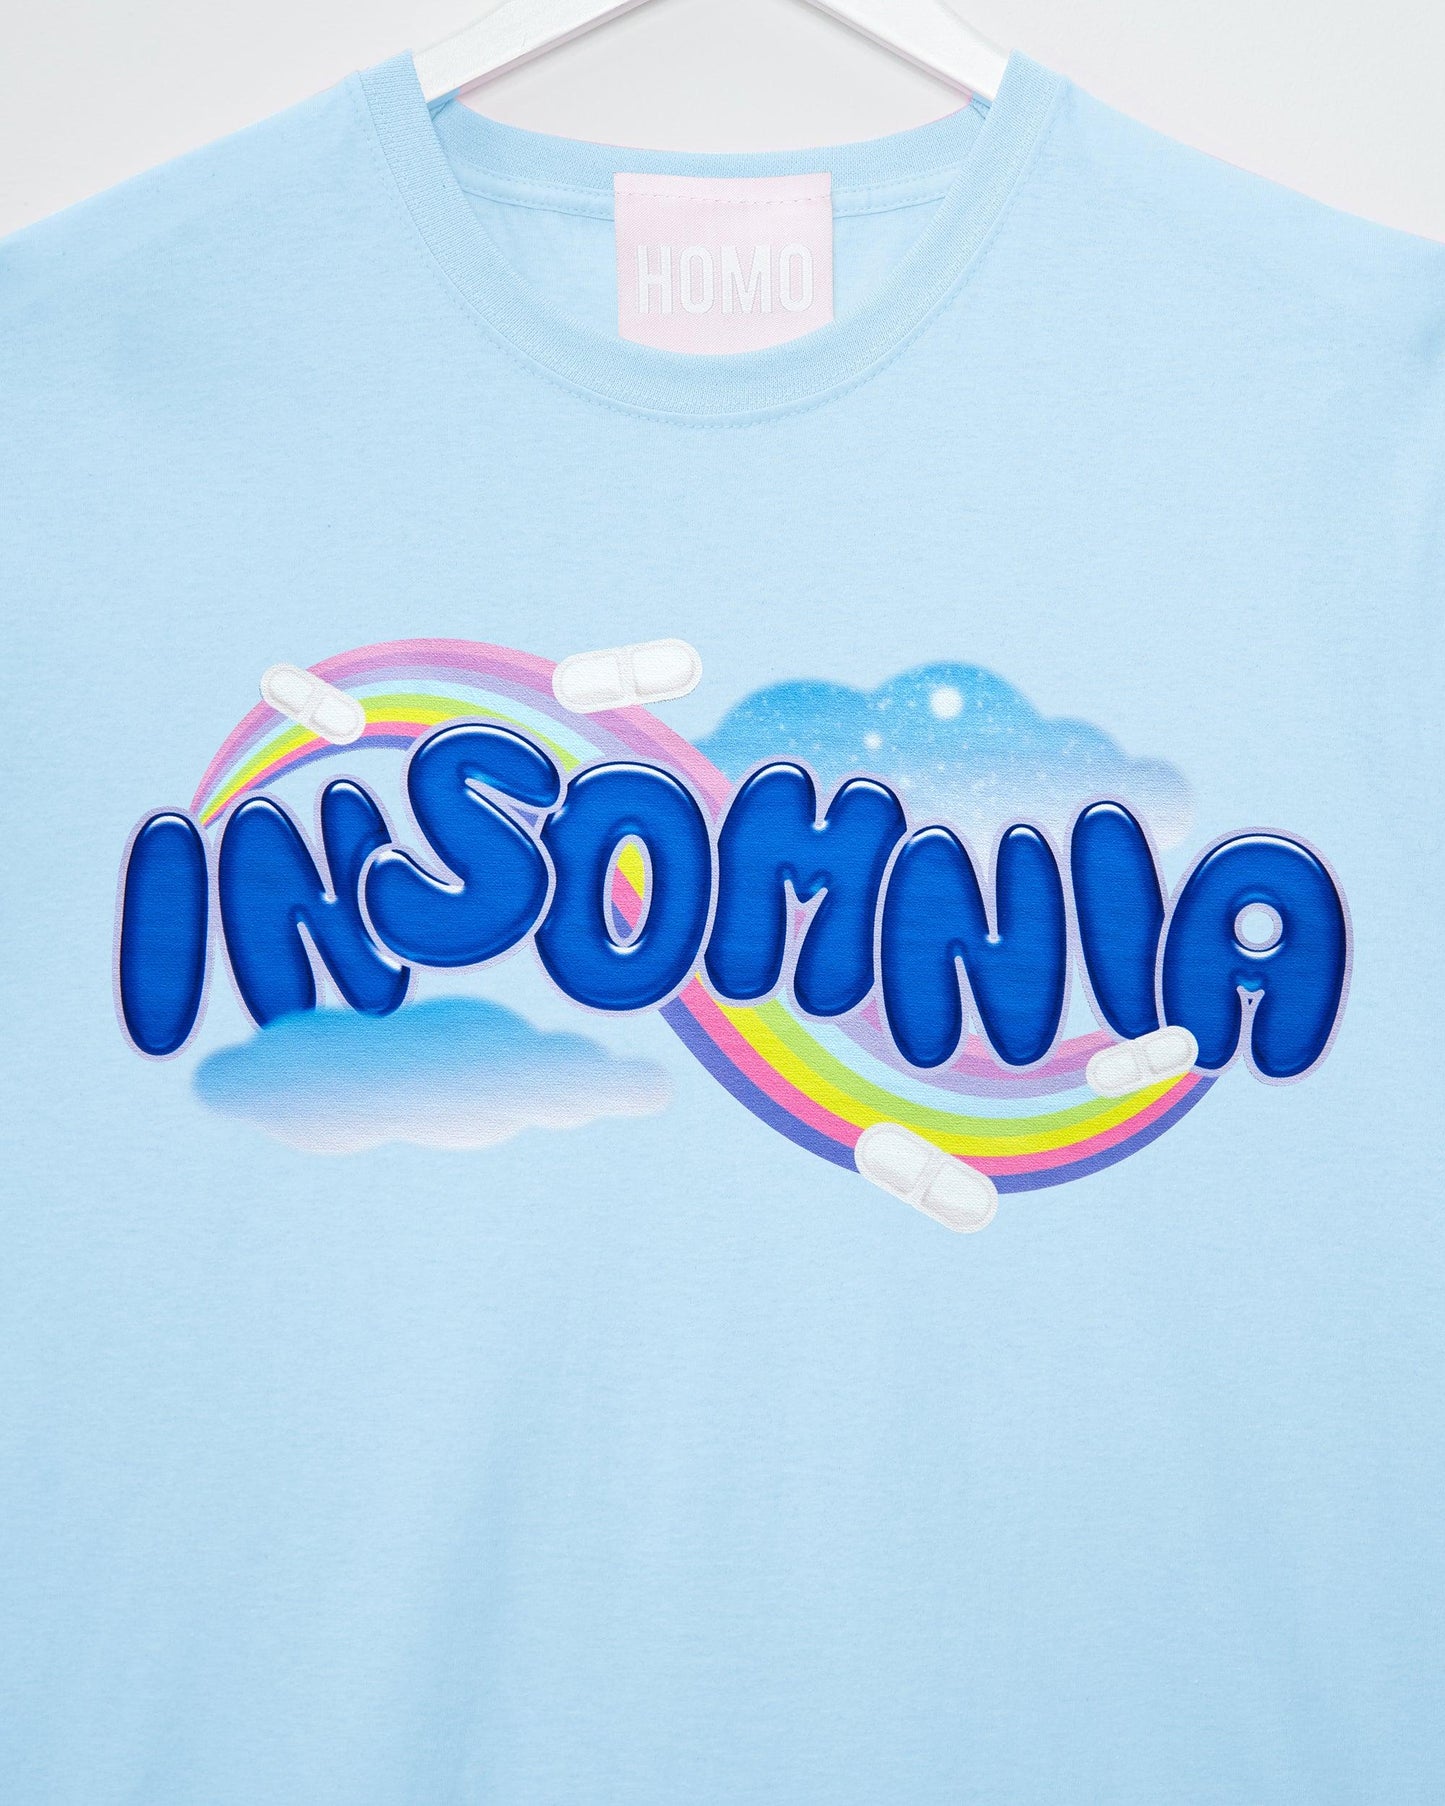 Insomnia - light pink tshirt - HOMOLONDON